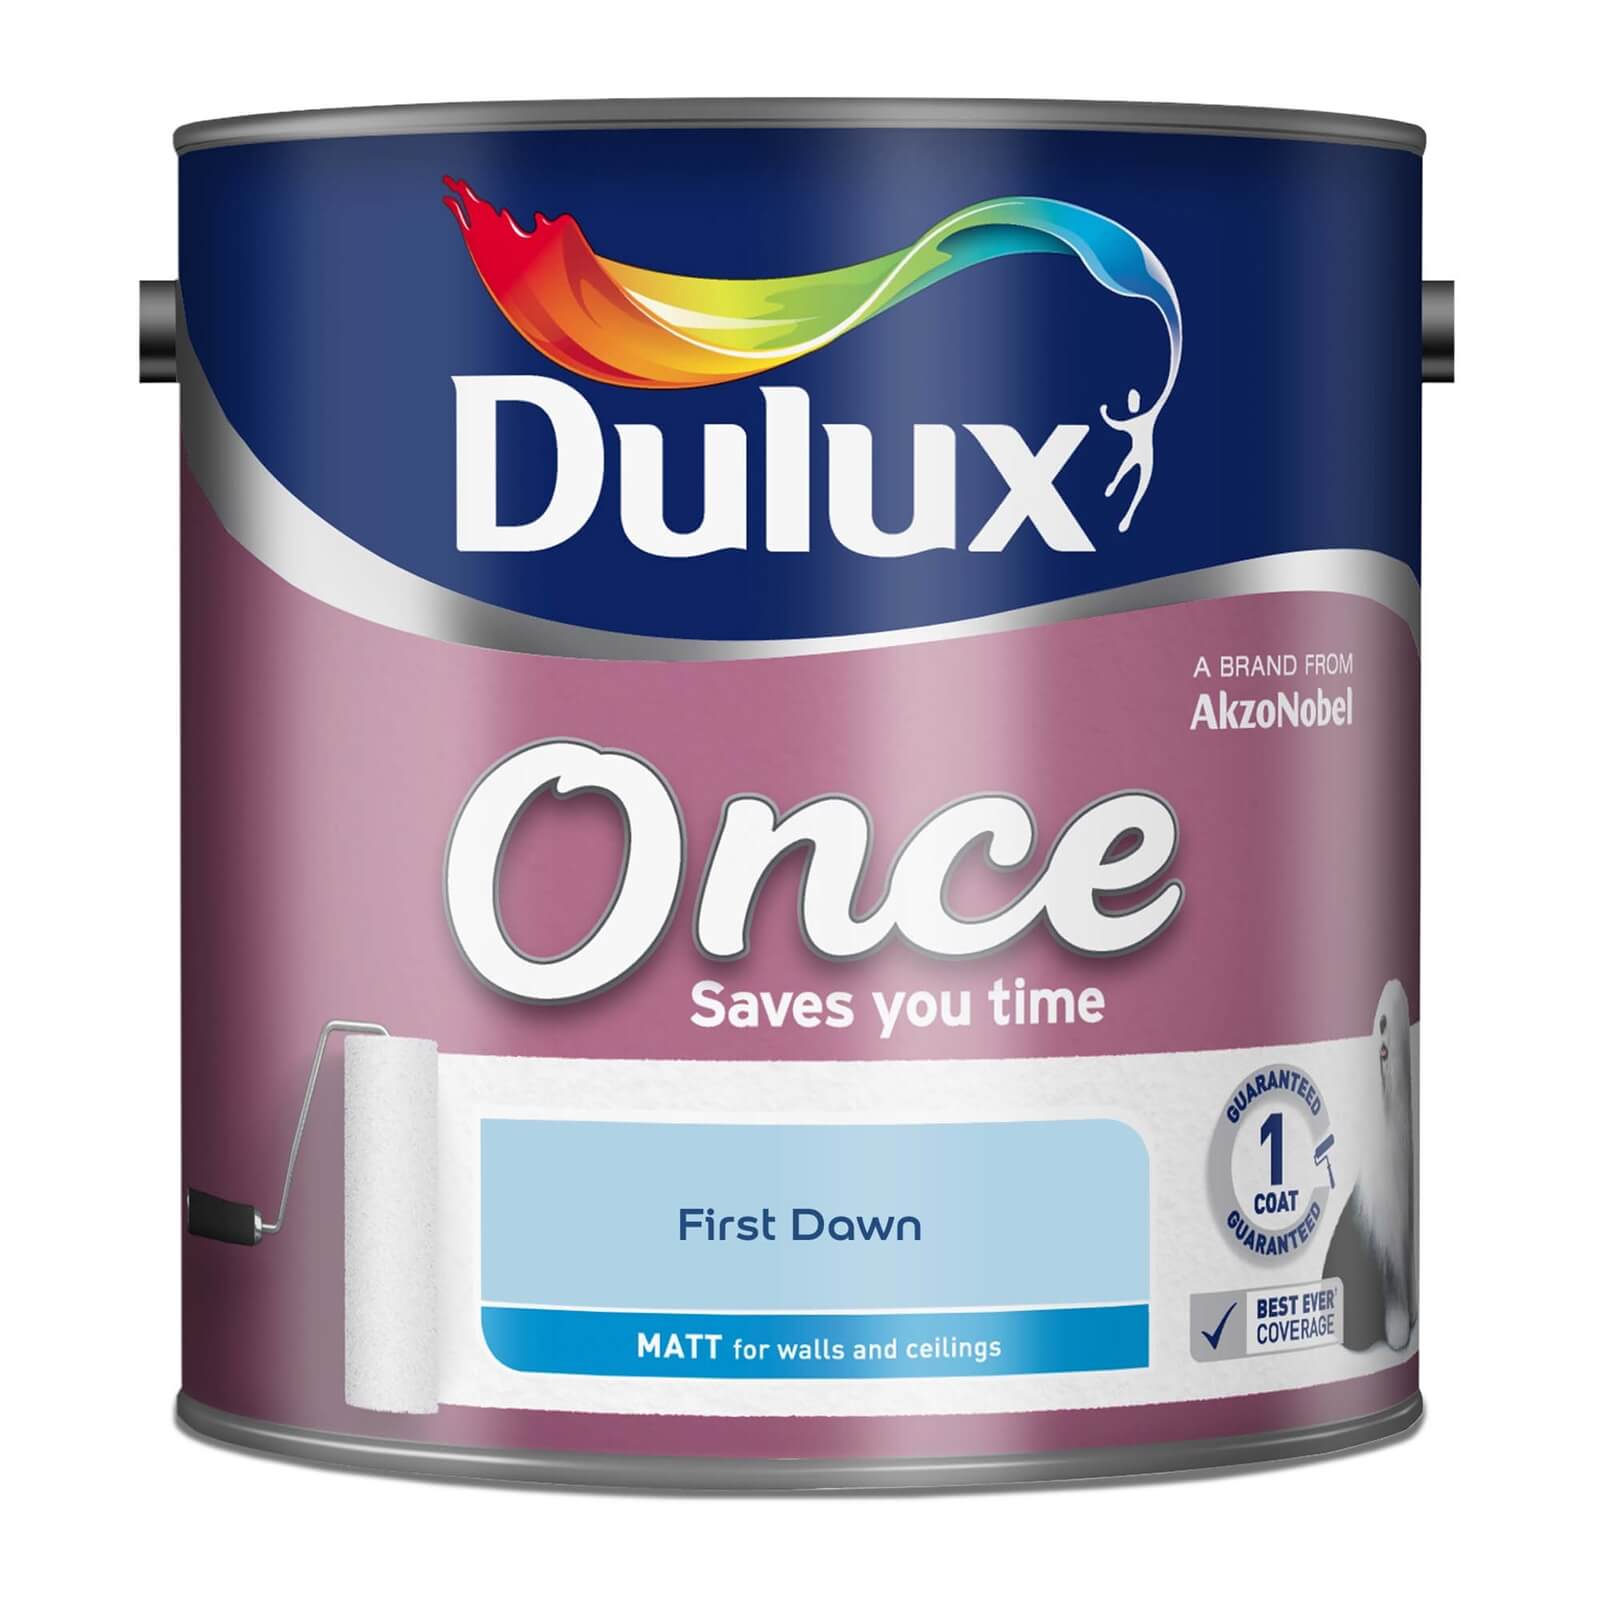 Dulux Once First Dawn - Matt Paint - 2.5L